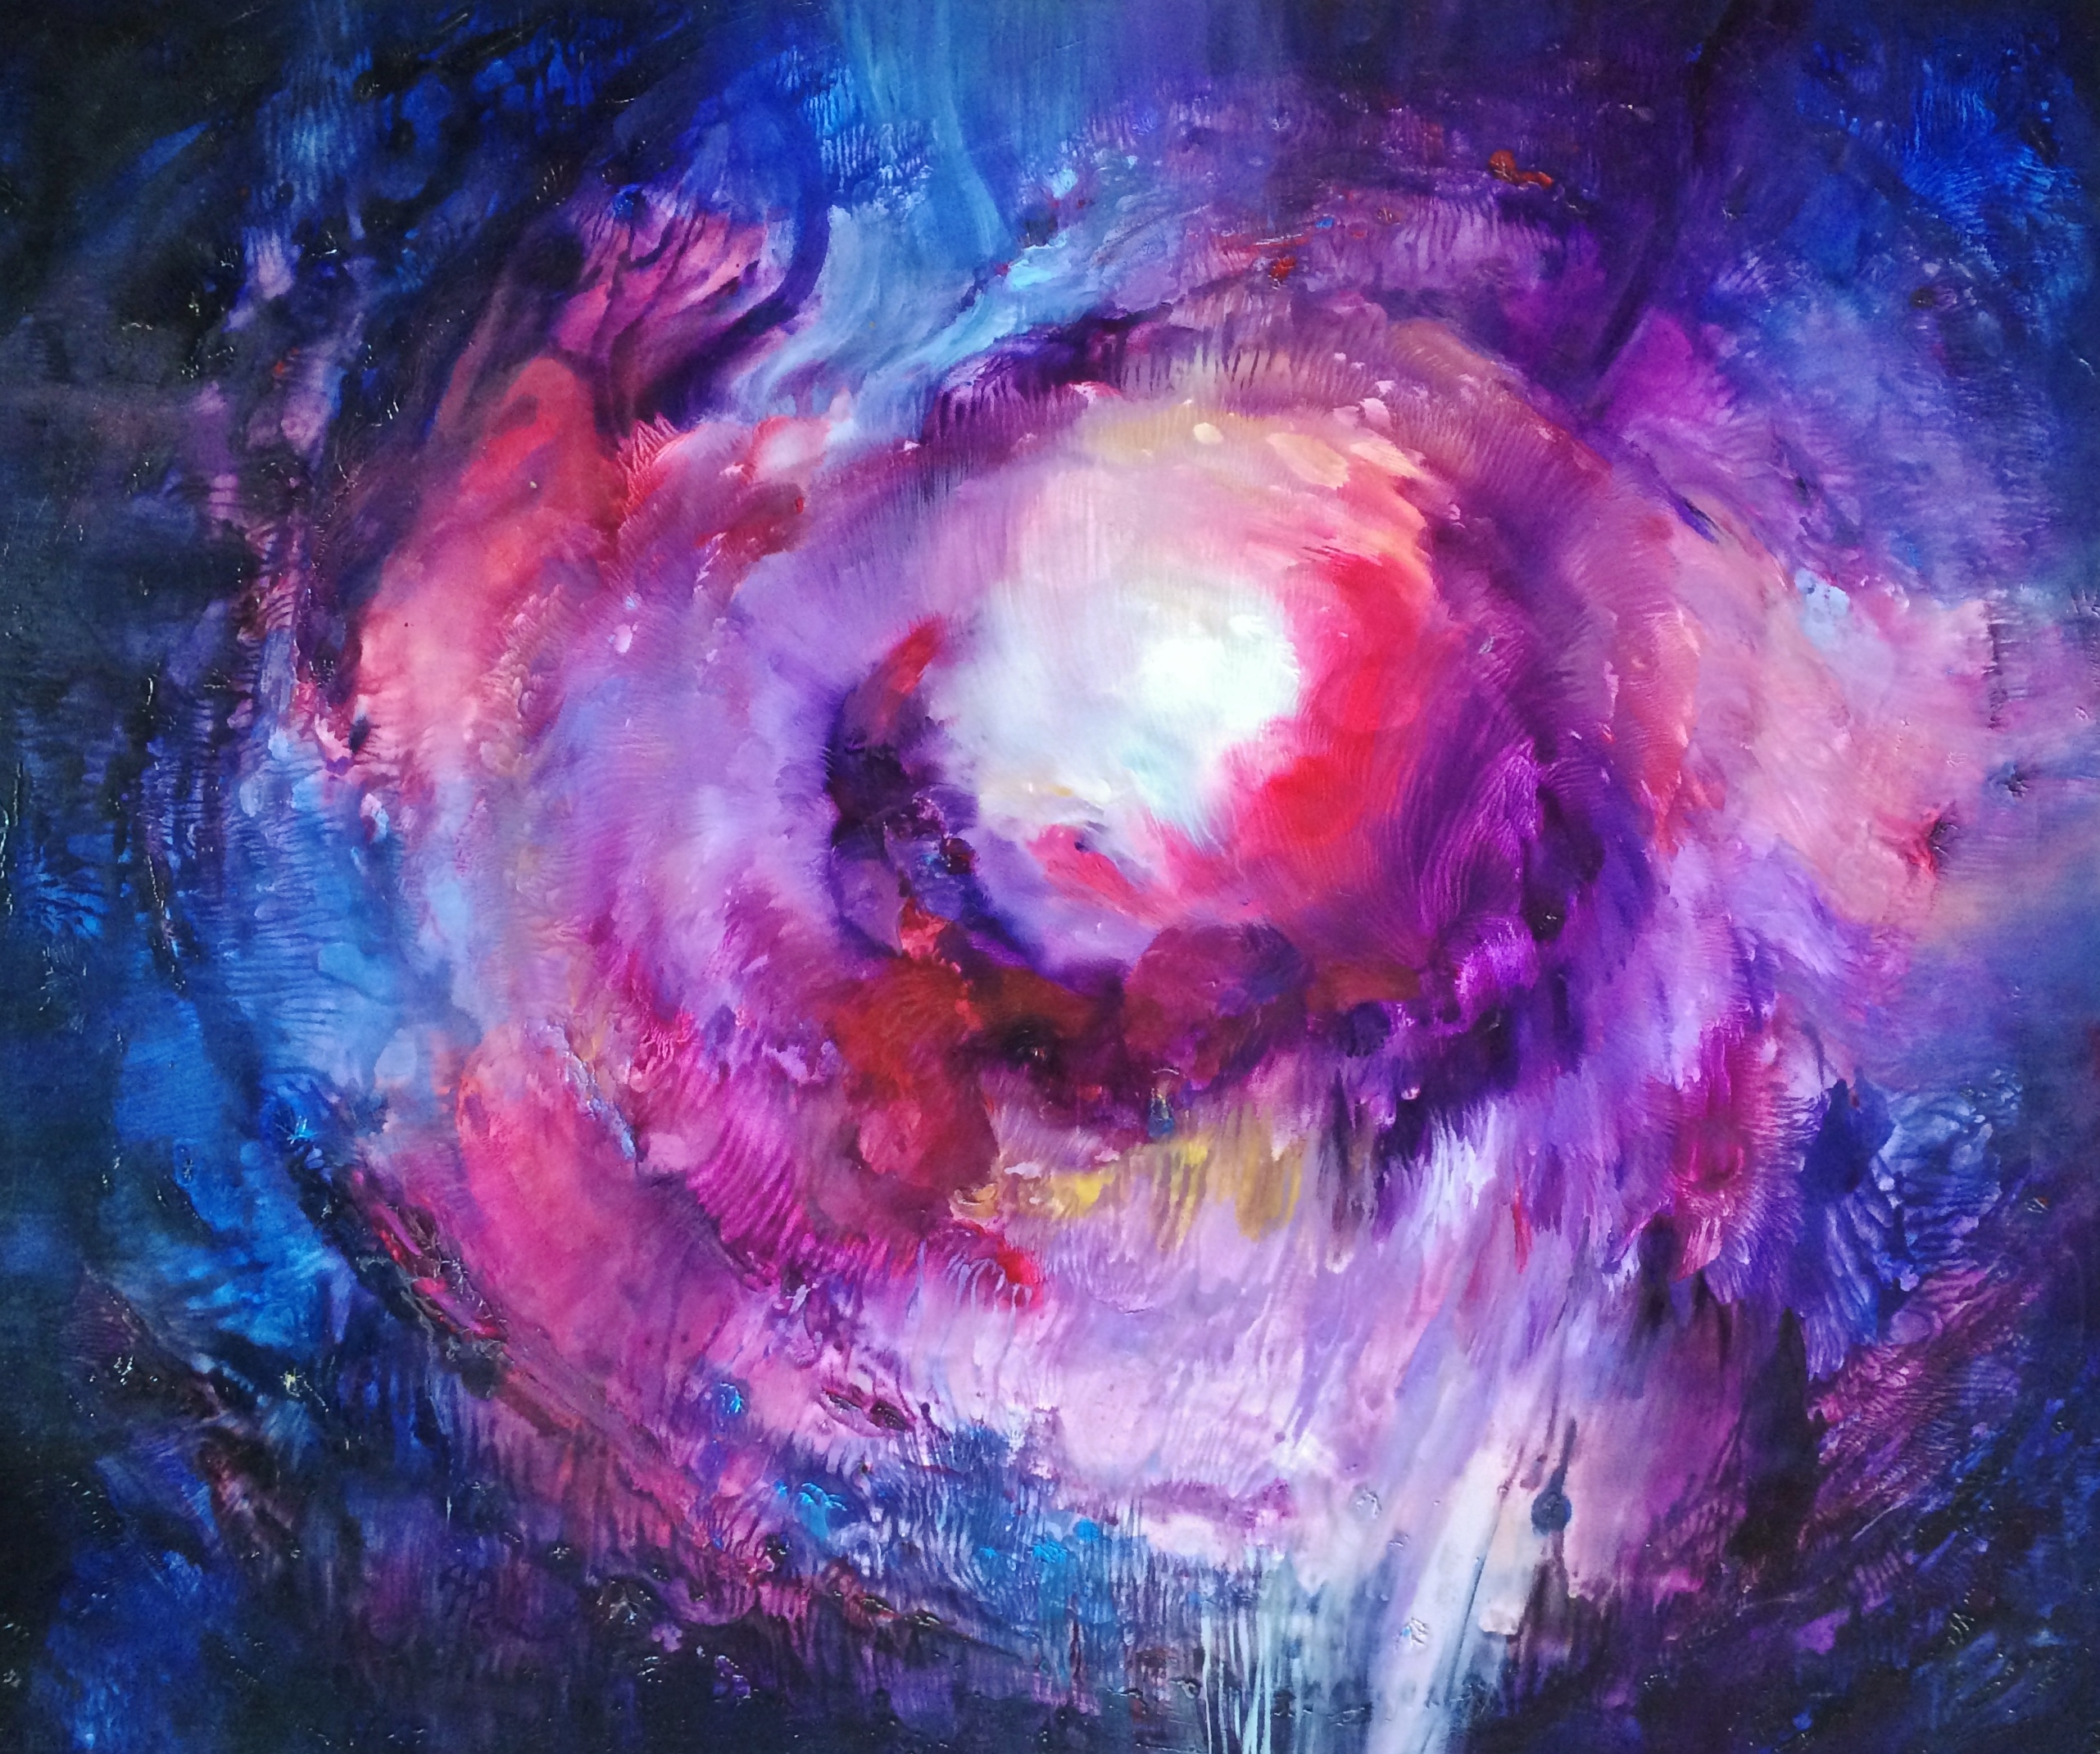 Anna Daria Merska, "Wewnętrzne Słońce XIX", olej na płótnie, 100 x 120 cm, 2012, cena: 4500 zł